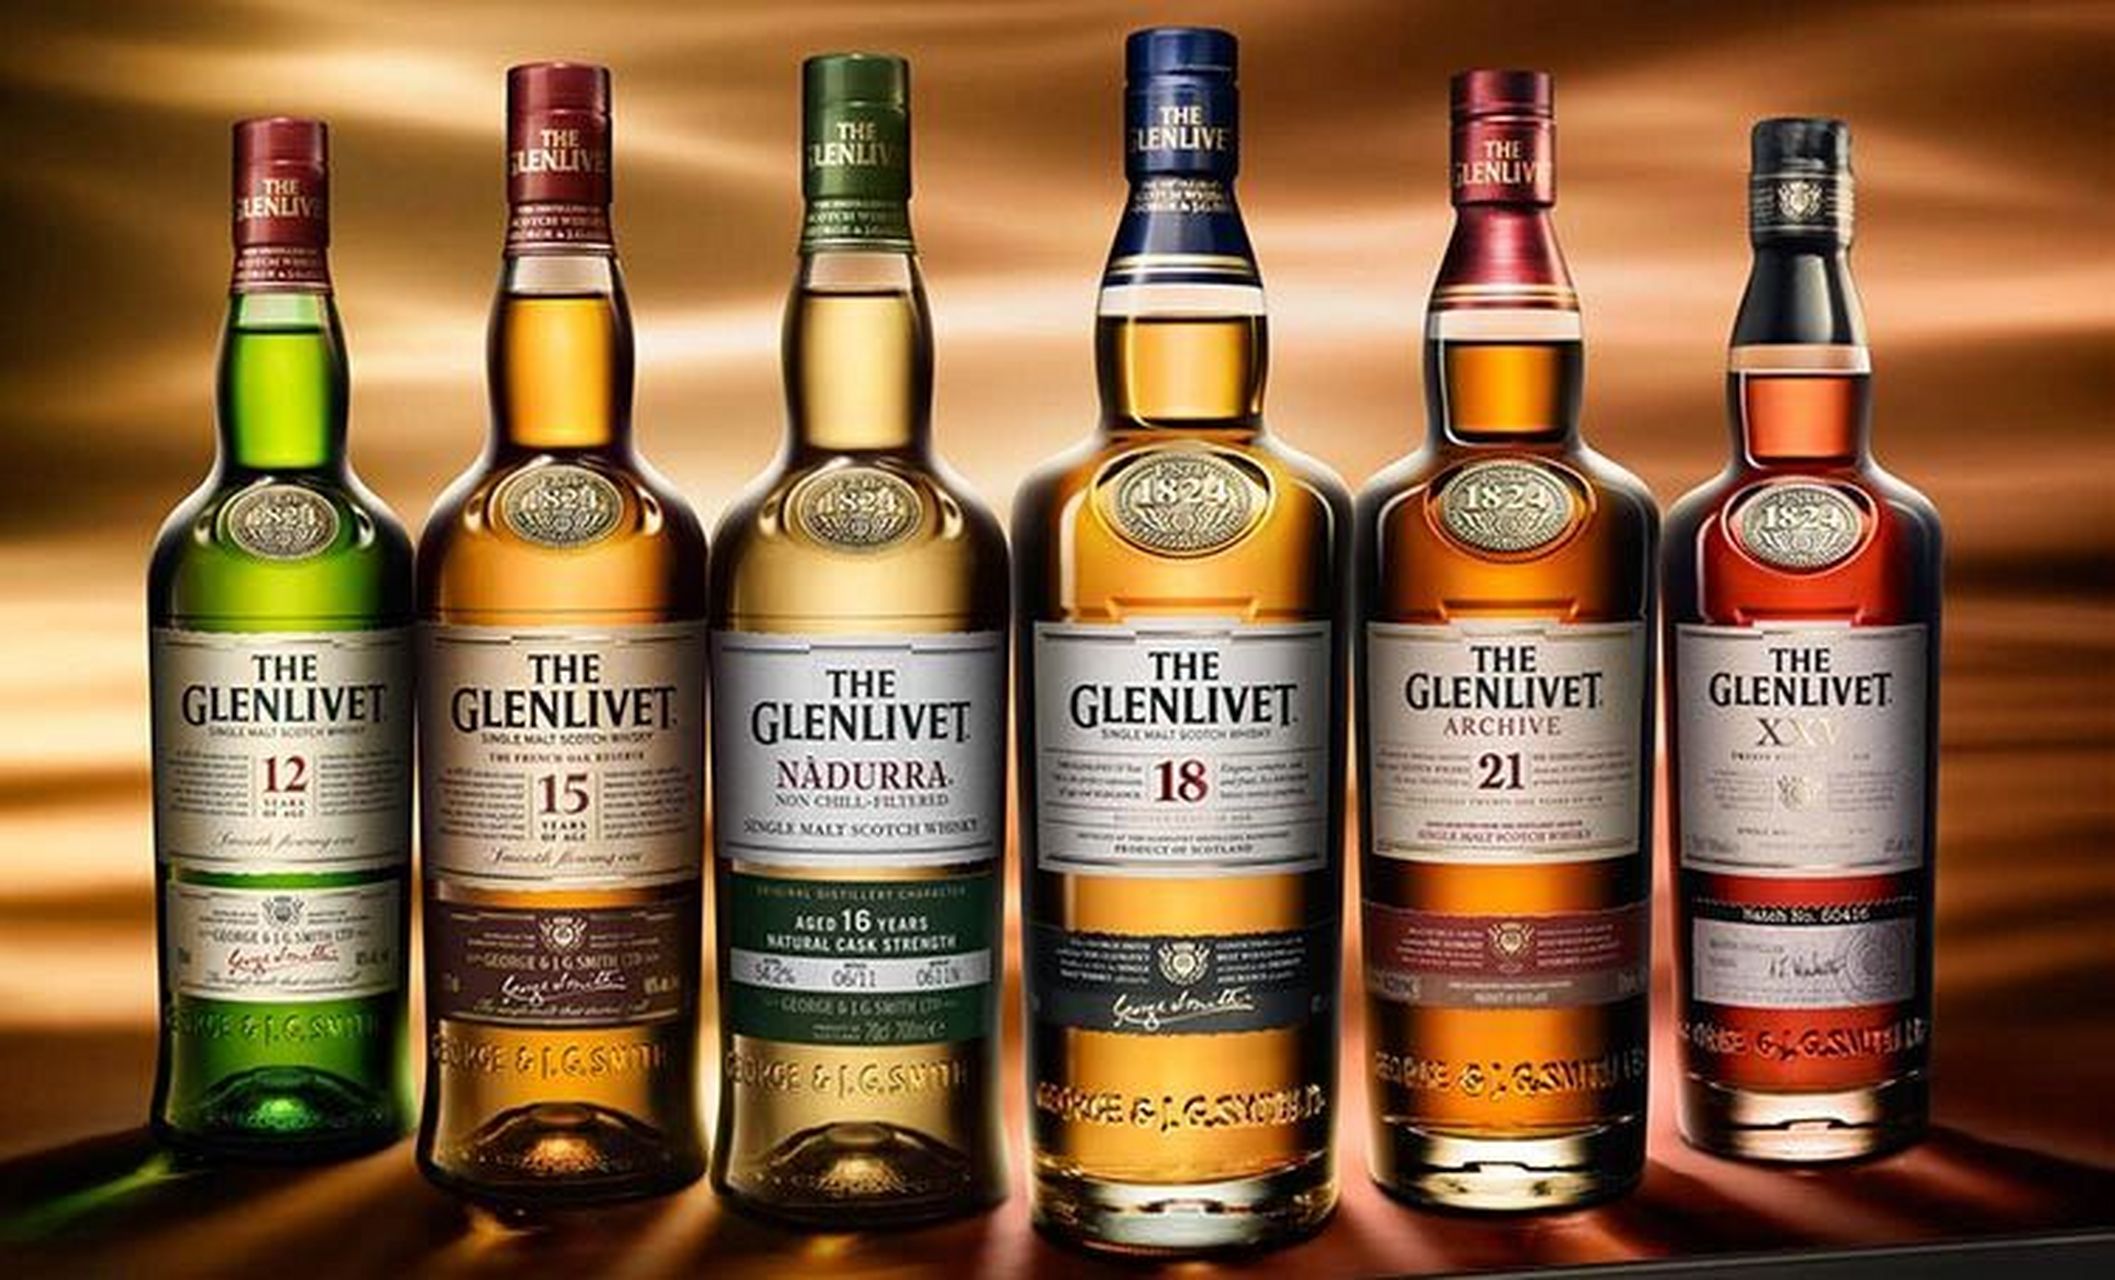 格兰威特12年初填桶单一麦芽苏格兰威士忌 glenlivet 12 years of age